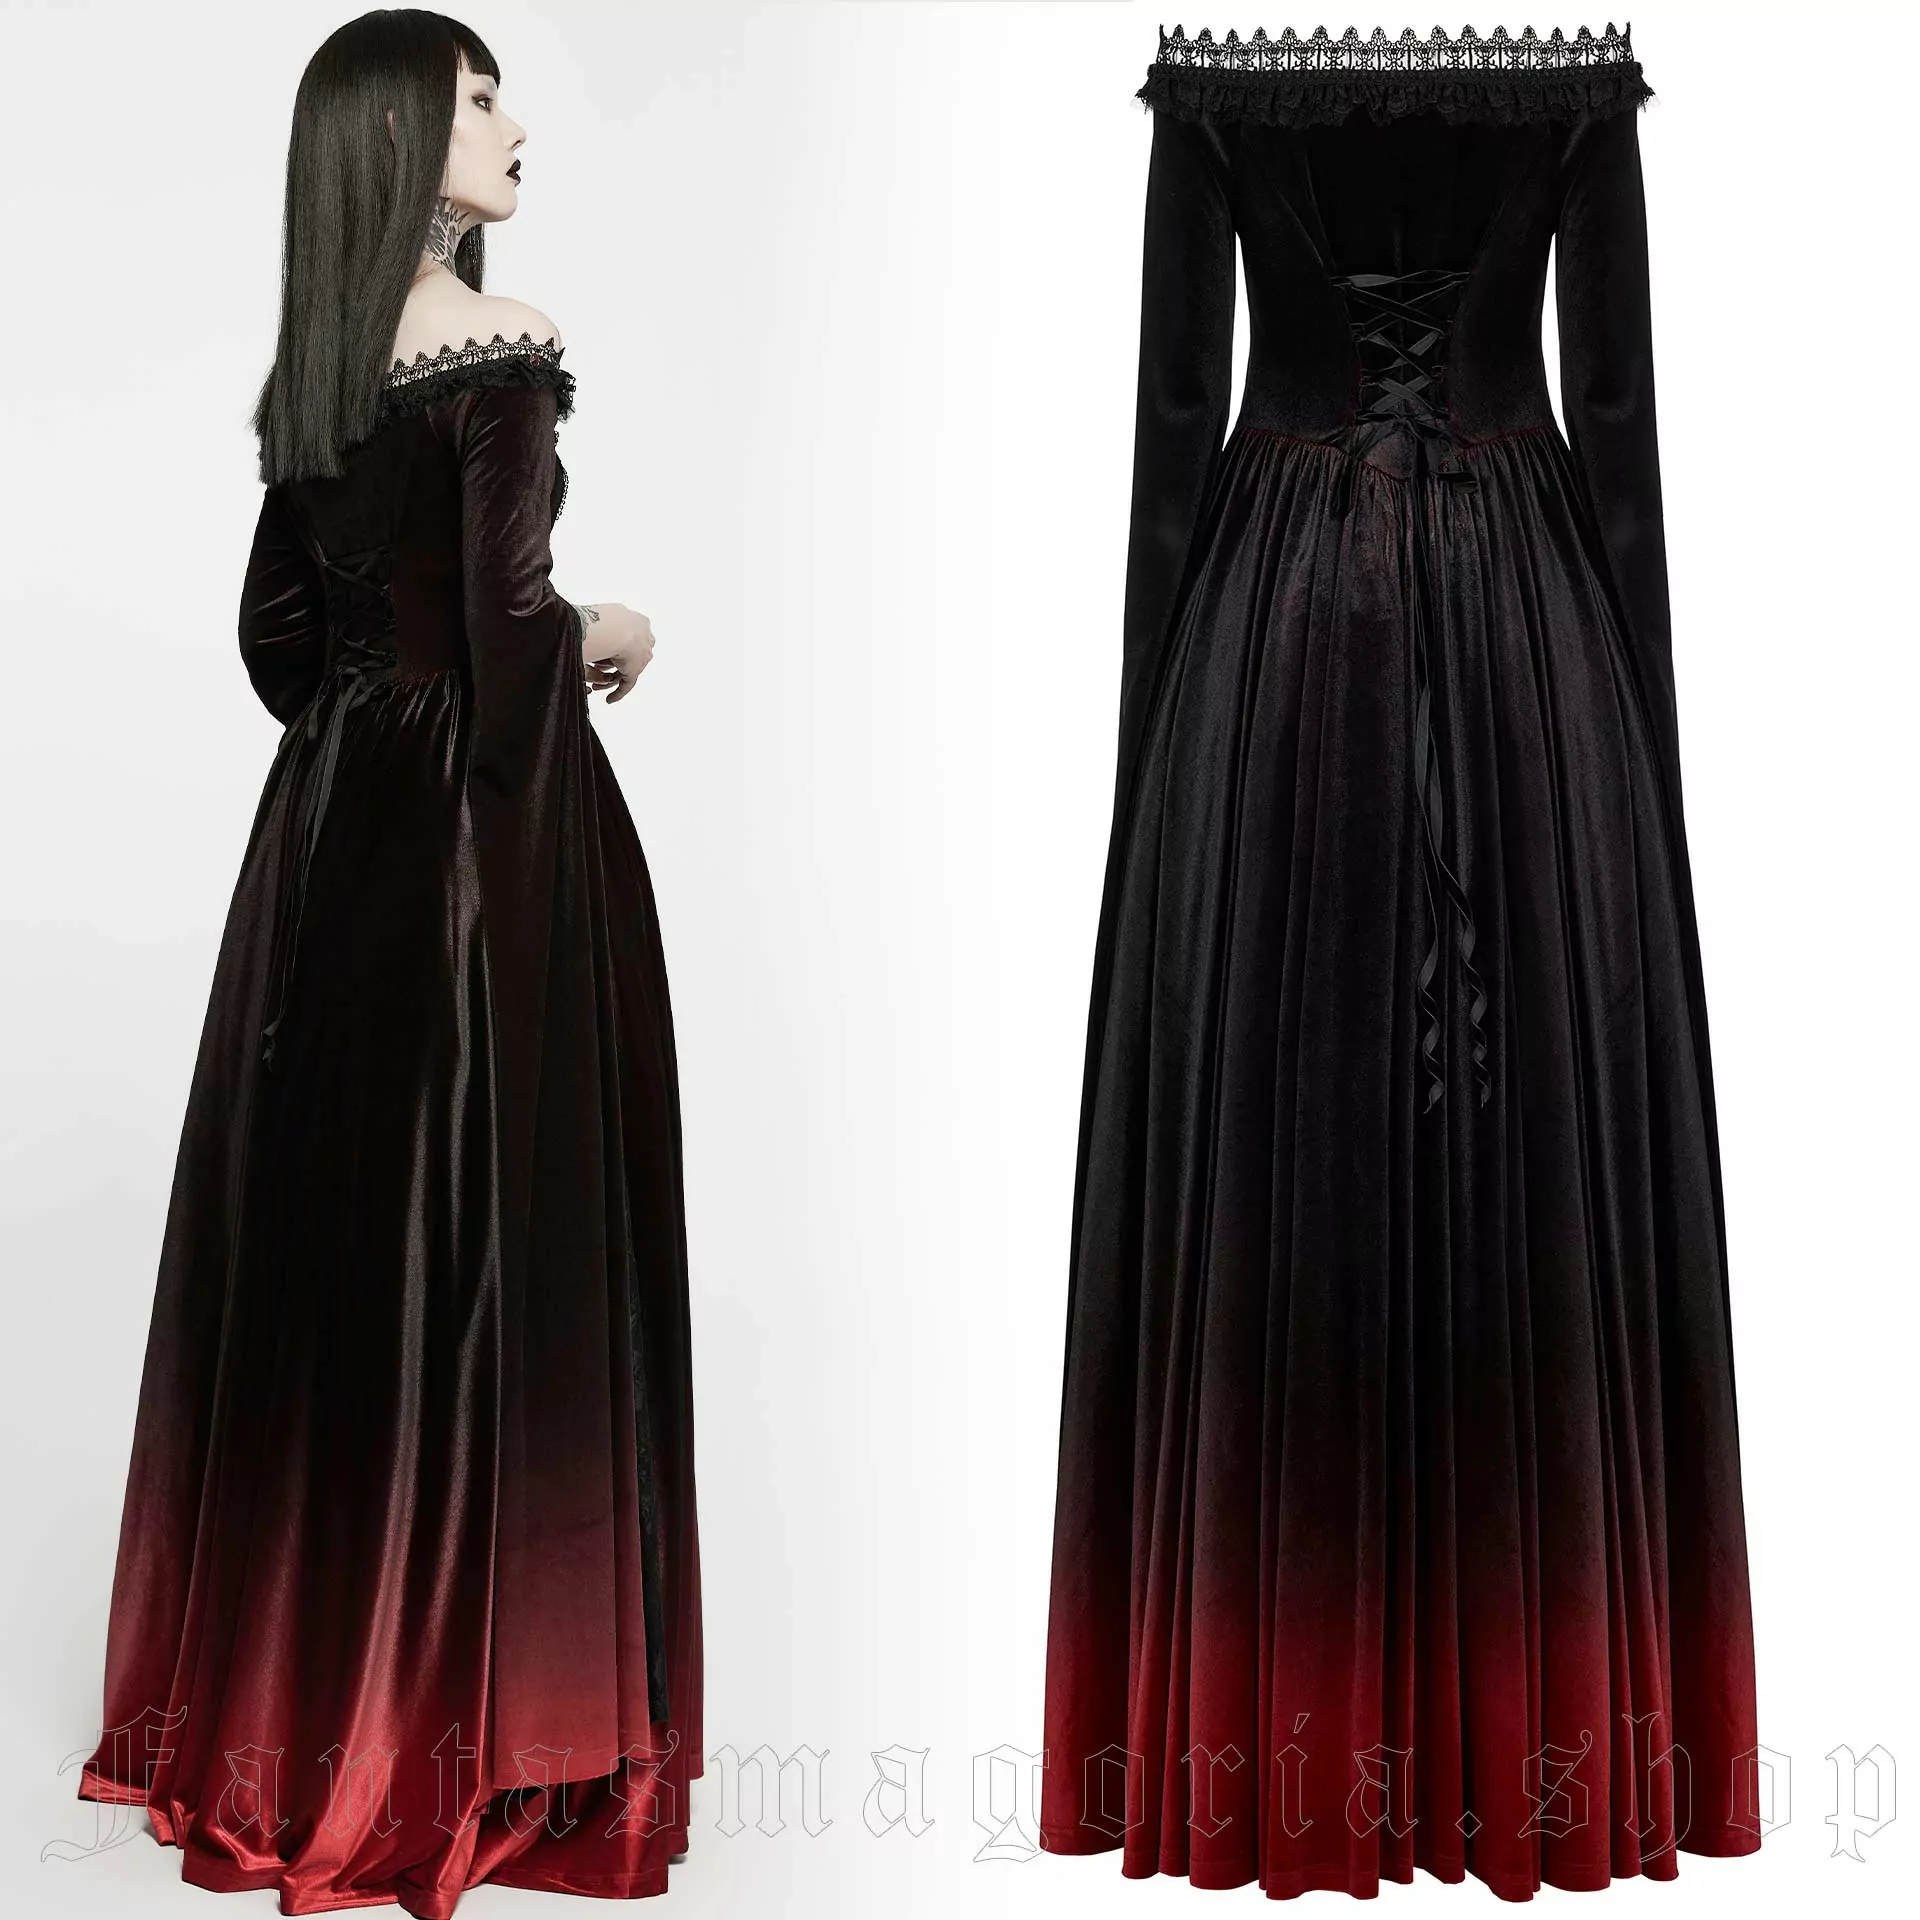 Luxury Gothic Dress, Vampire Gown, Gothic Wedding Dress, Dark